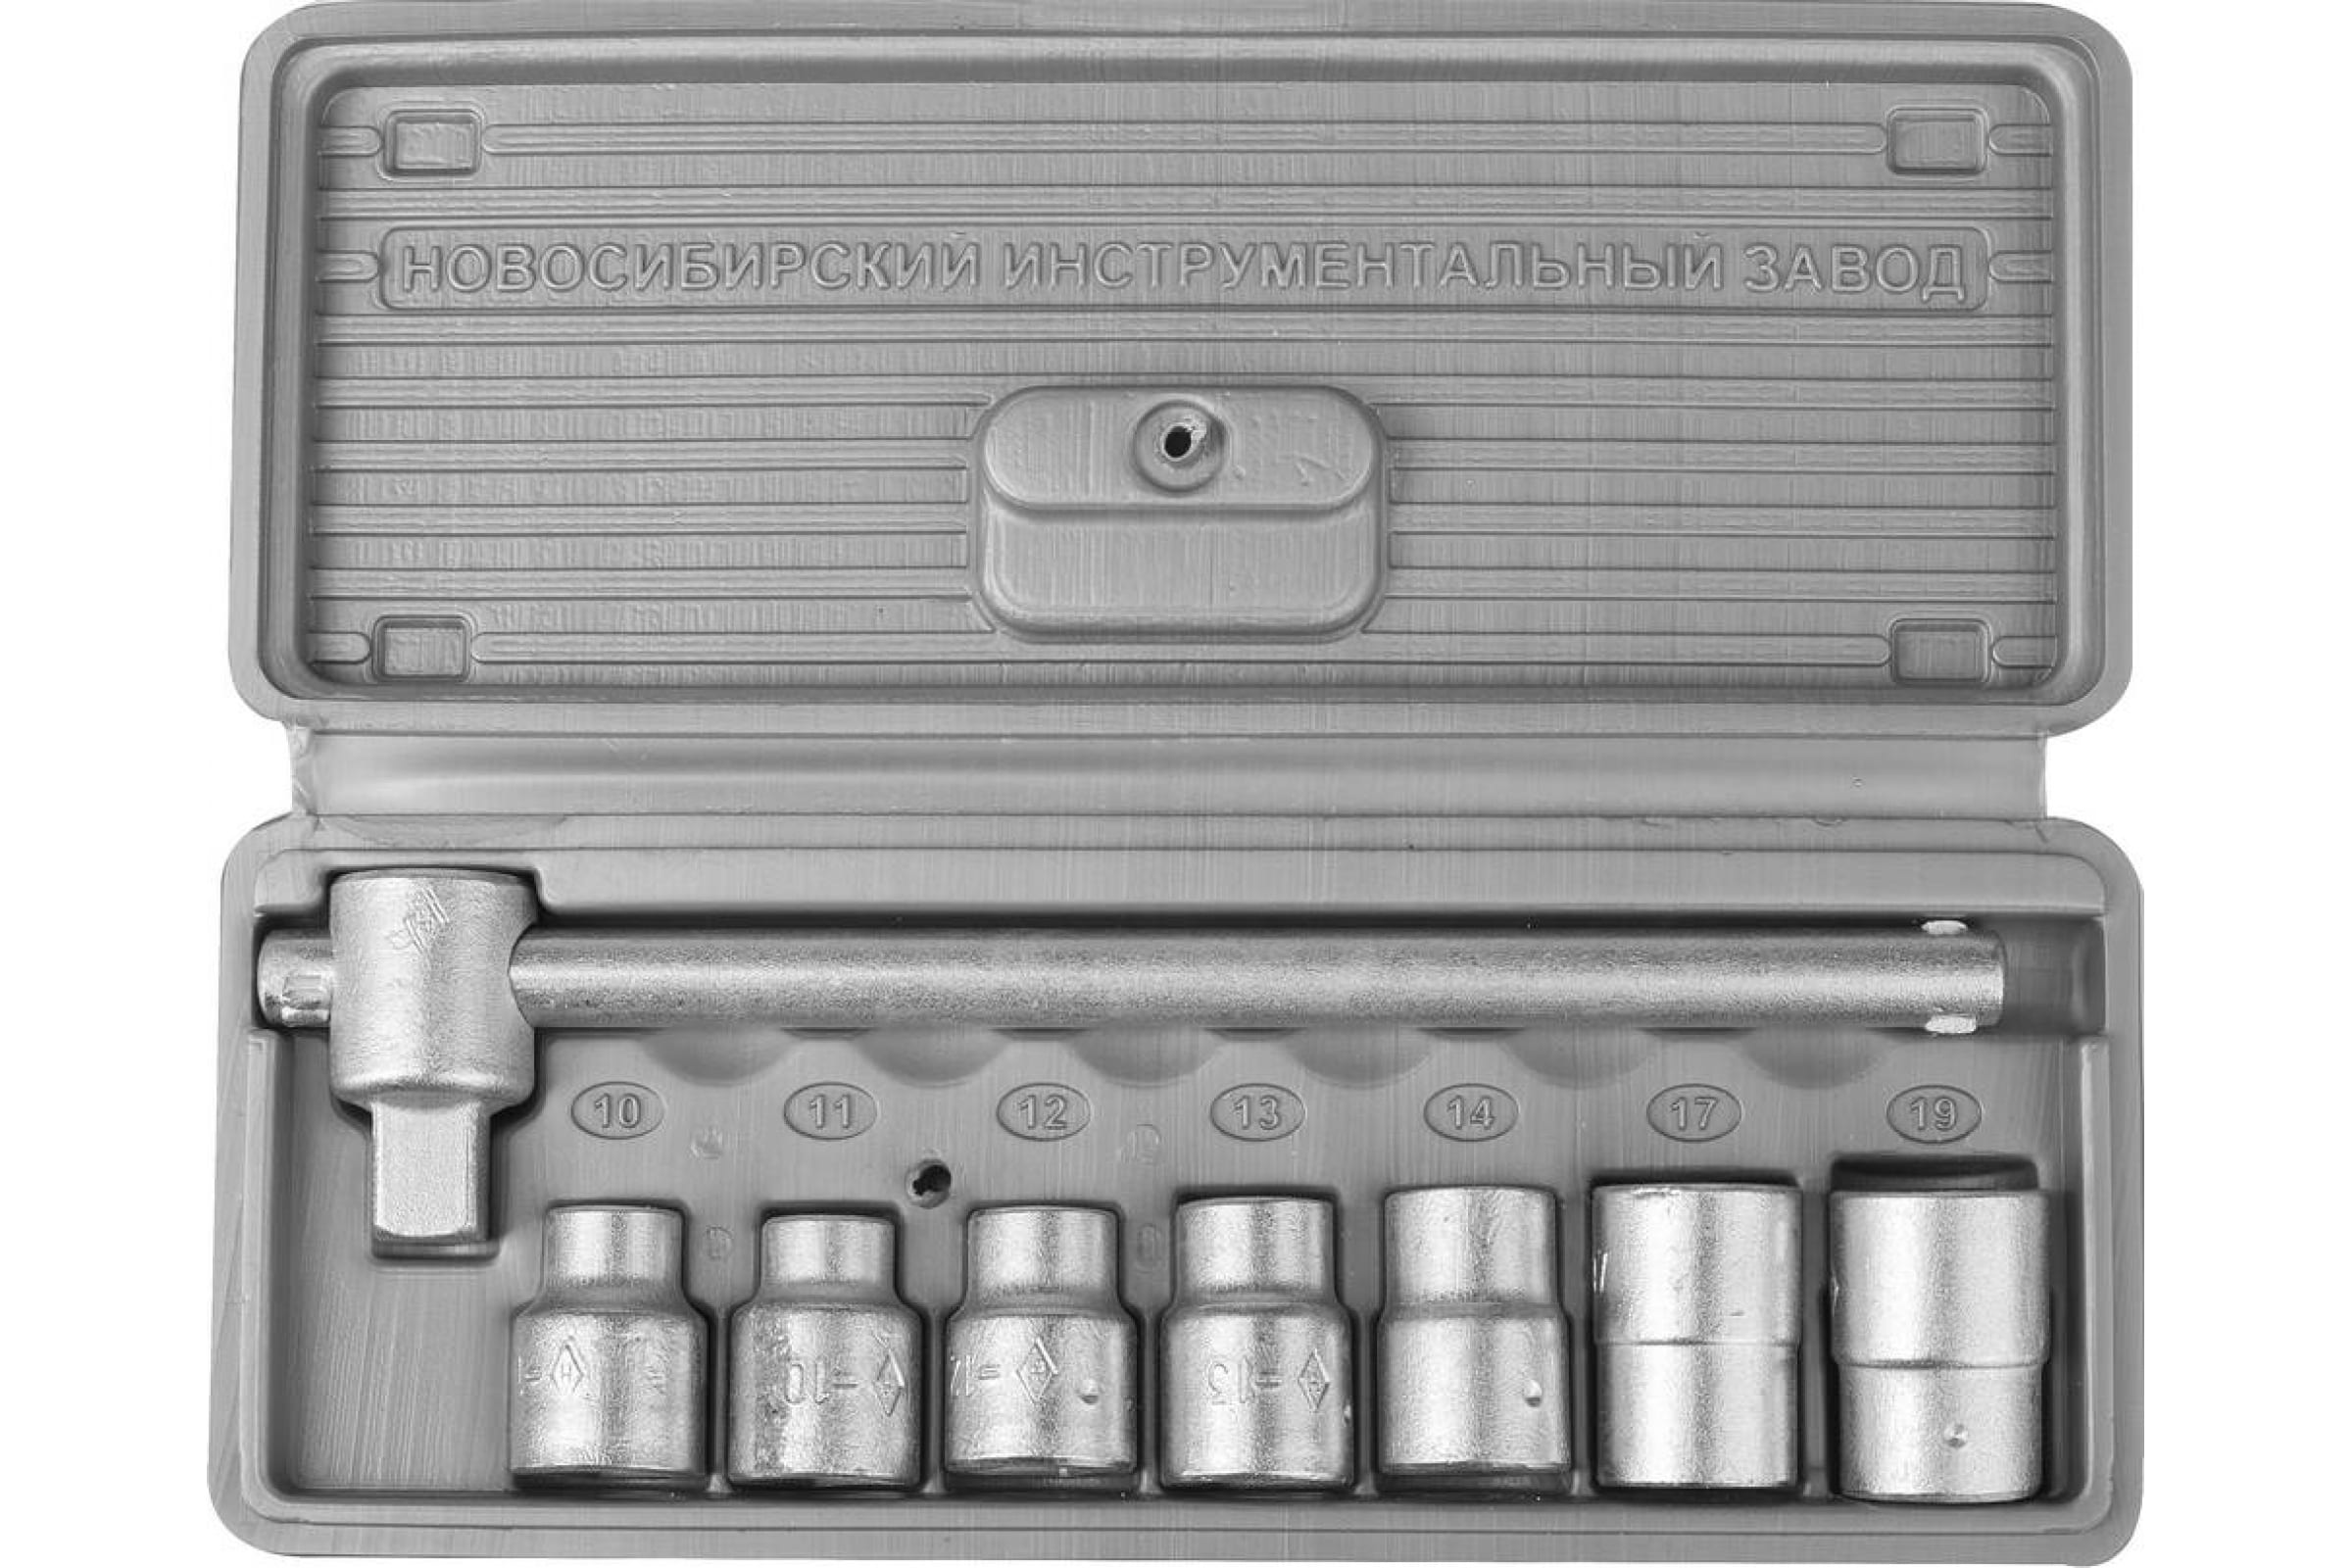  головок НИЗ Шоферский инструмент №1, предметов в наборе: 8 шт .